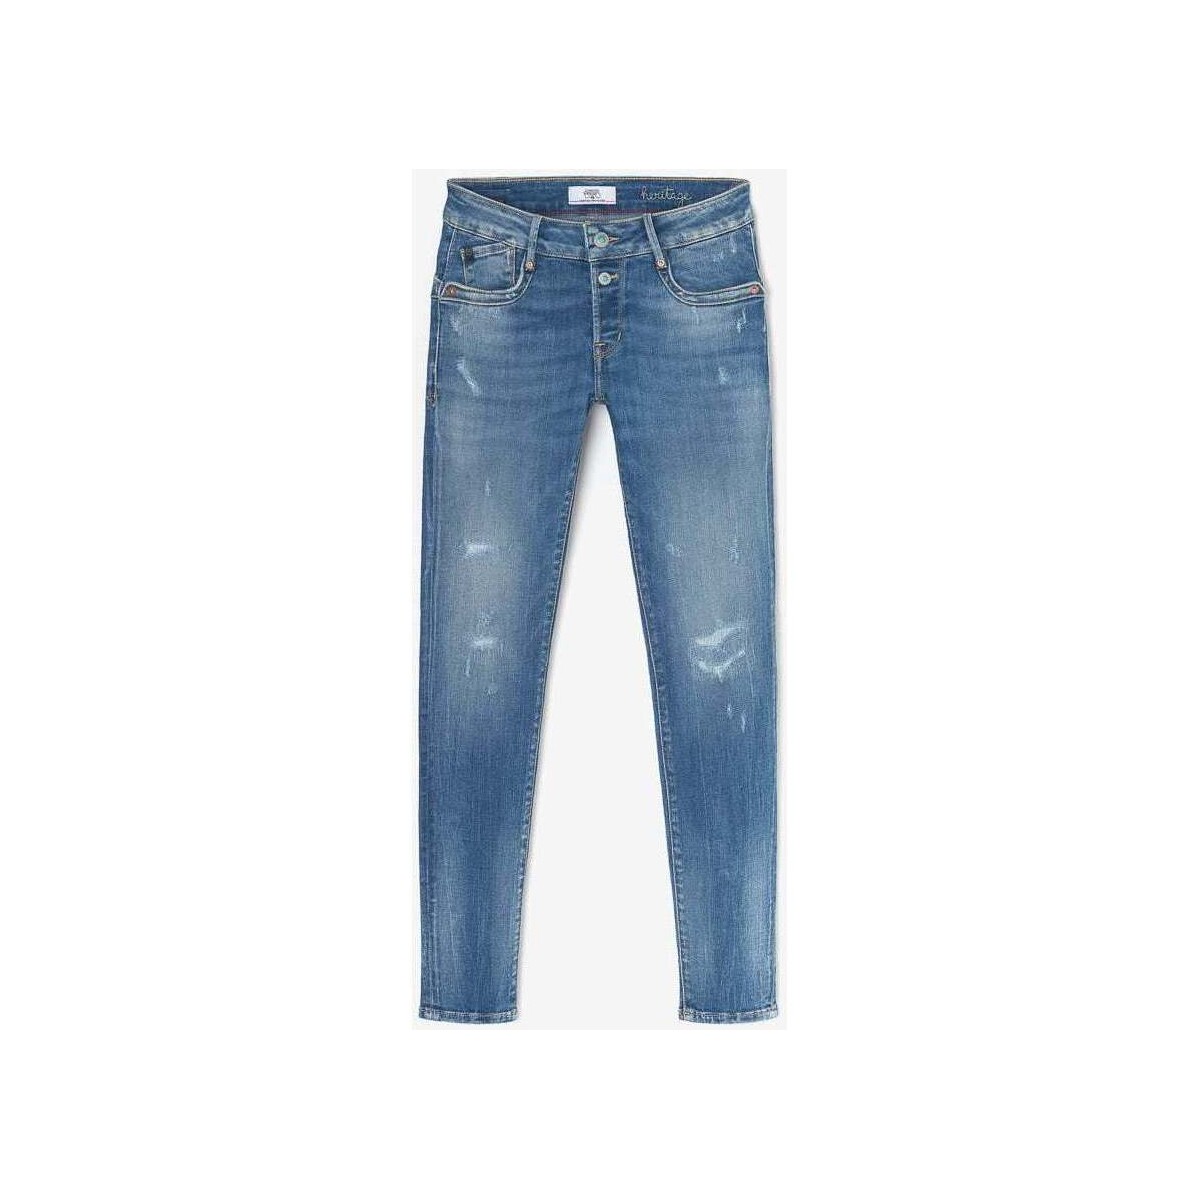 Vêtements Femme Jeans Alca uz High Waisted Pantsises Thais pulp slim 7/8ème jeans destroy bleu Bleu